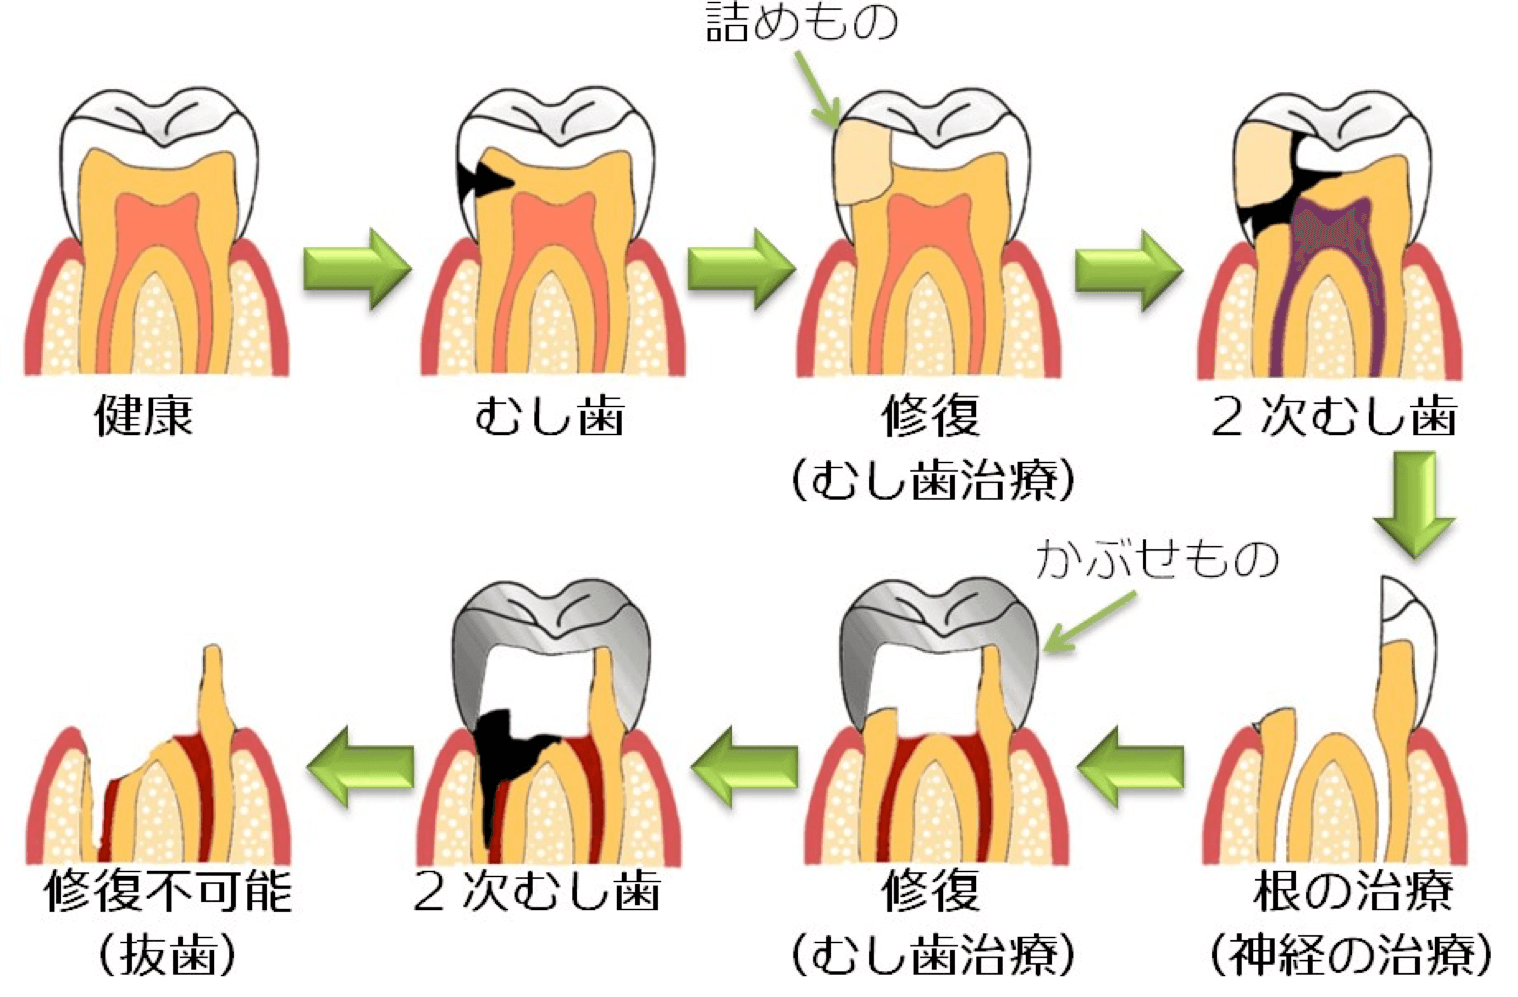 歯 と 歯 の 間 虫歯 治療